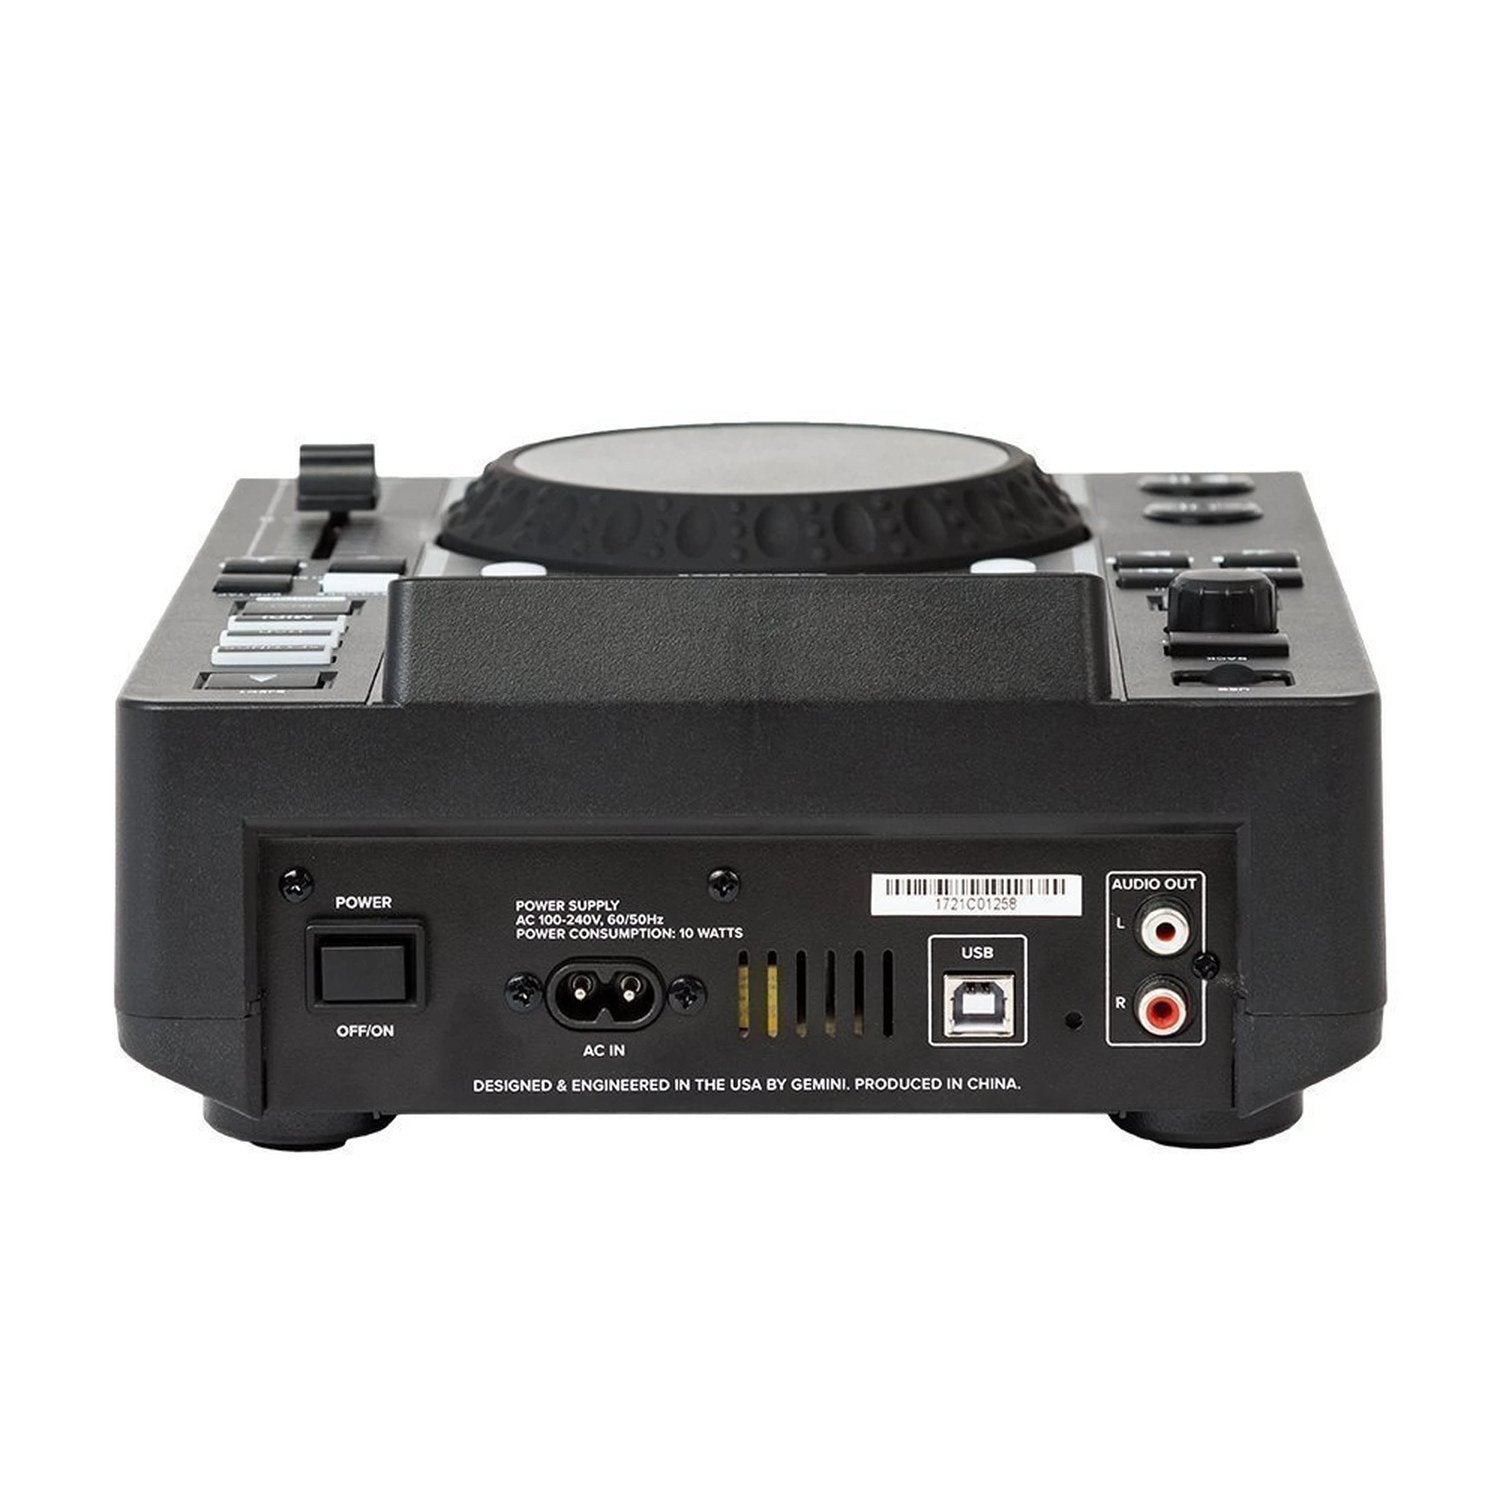 Gemini MDJ-500 Professional USB Media Player - DY Pro Audio